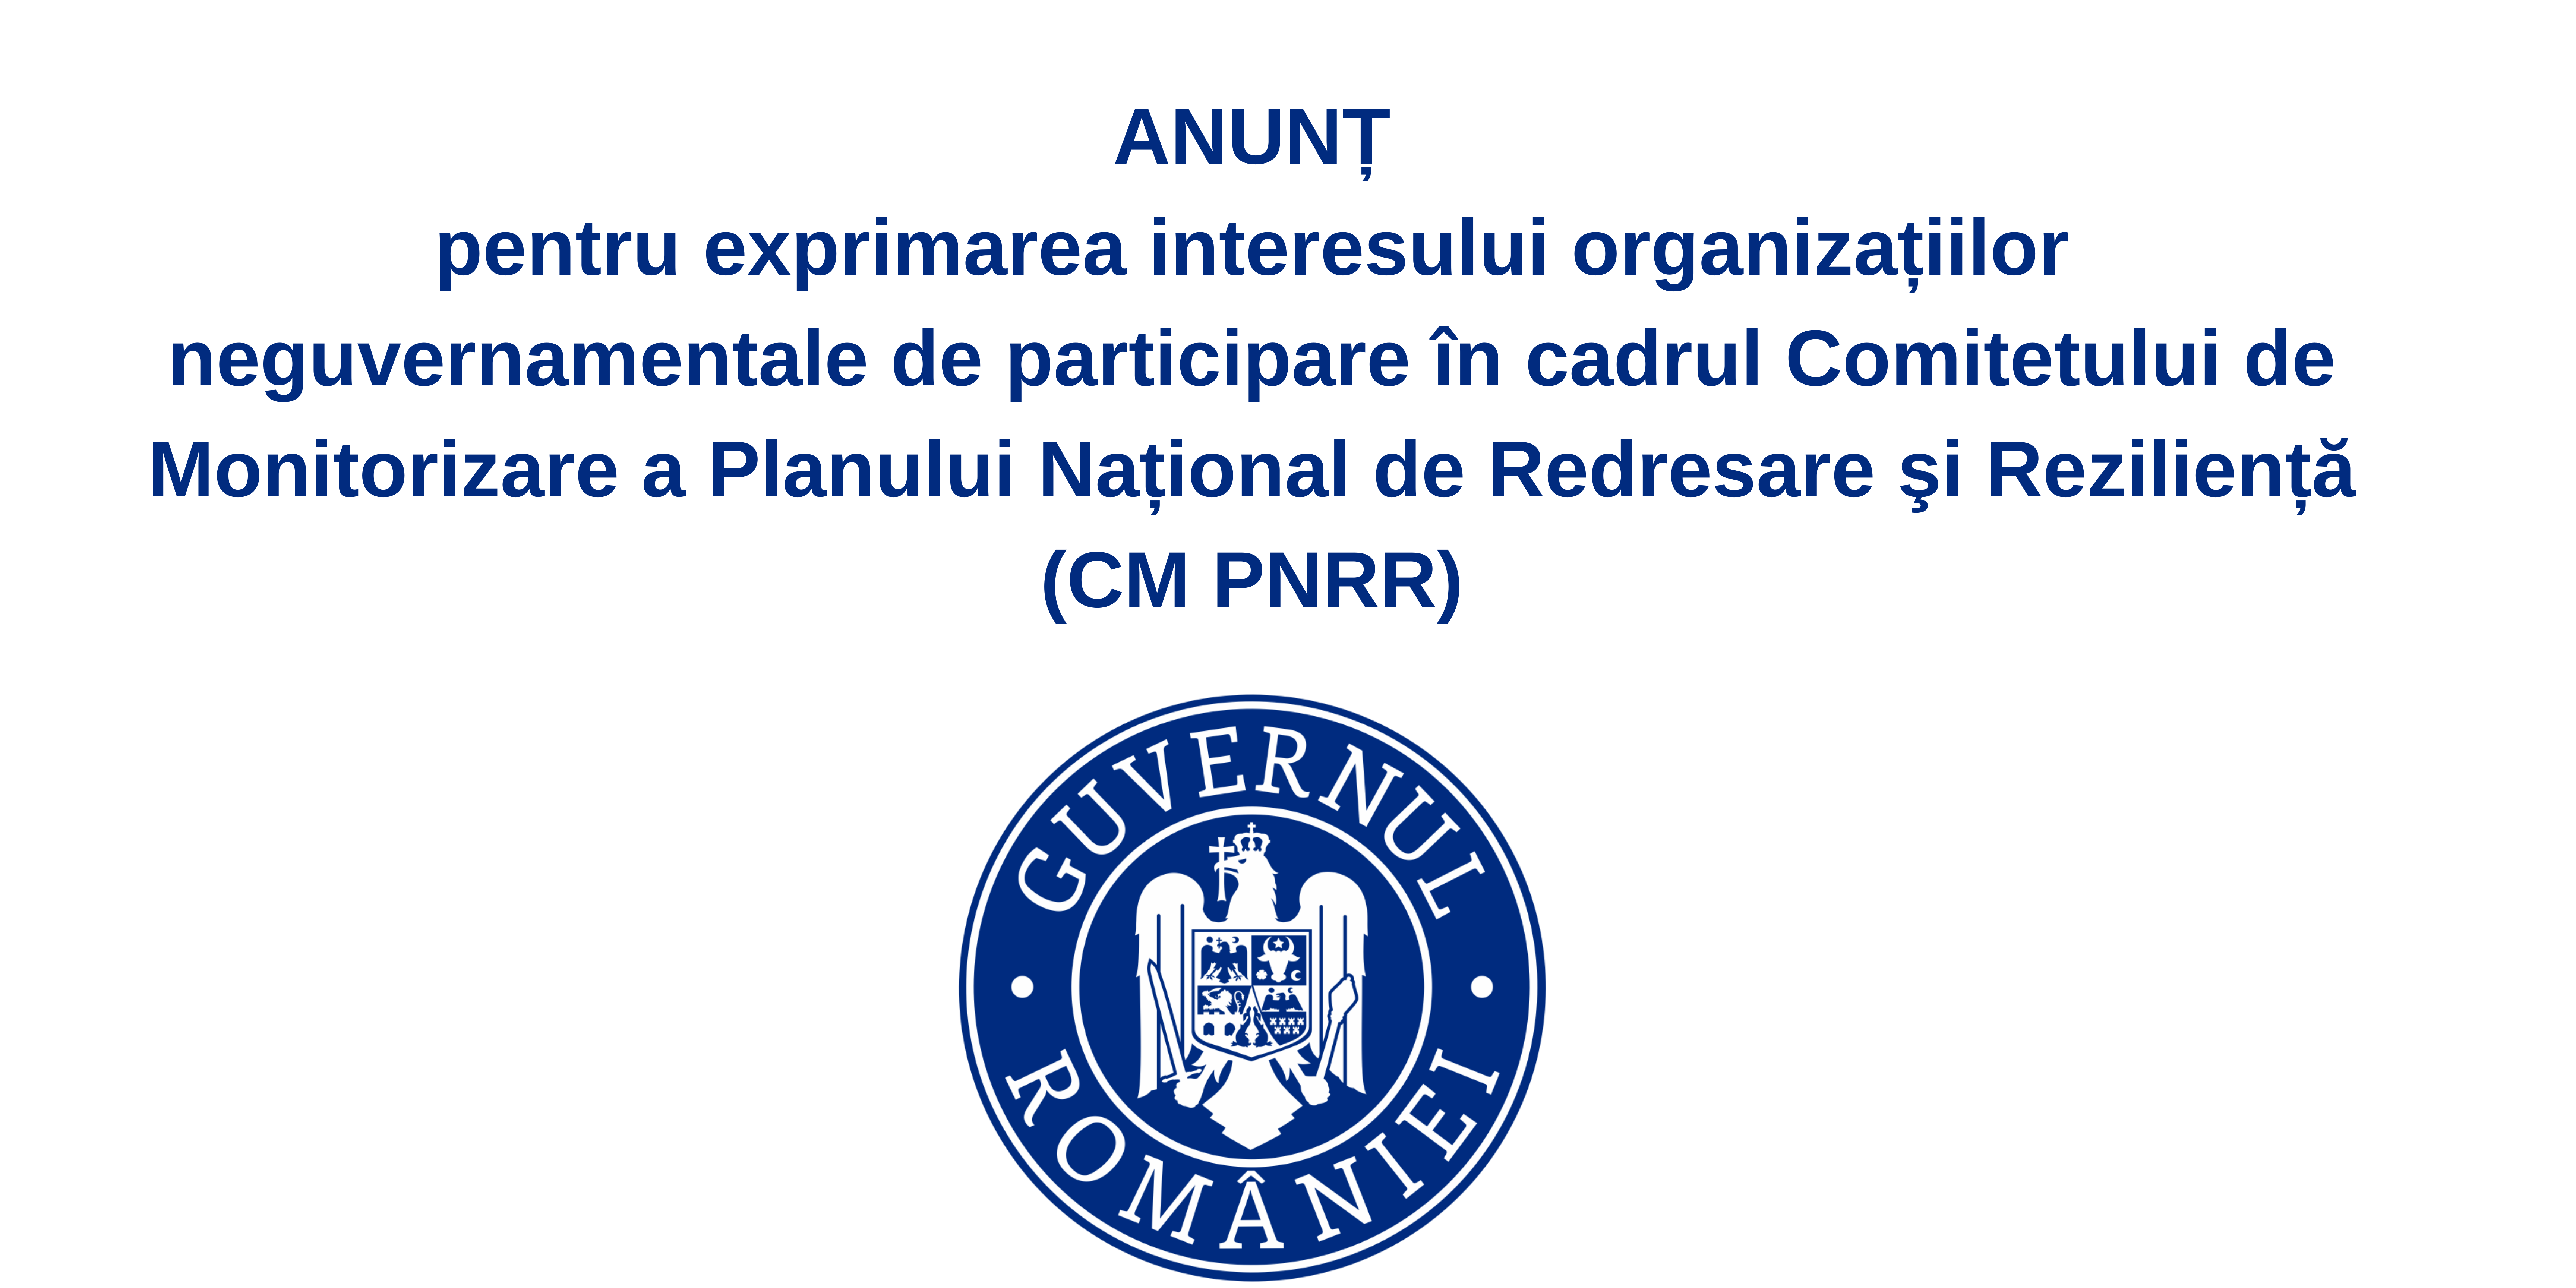 ANUNȚ pentru exprimarea interesului organizațiilor neguvernamentale de participare în cadrul Comitetului de Monitorizare a Planului Național de Redresare şi Reziliență (CM PNRR)